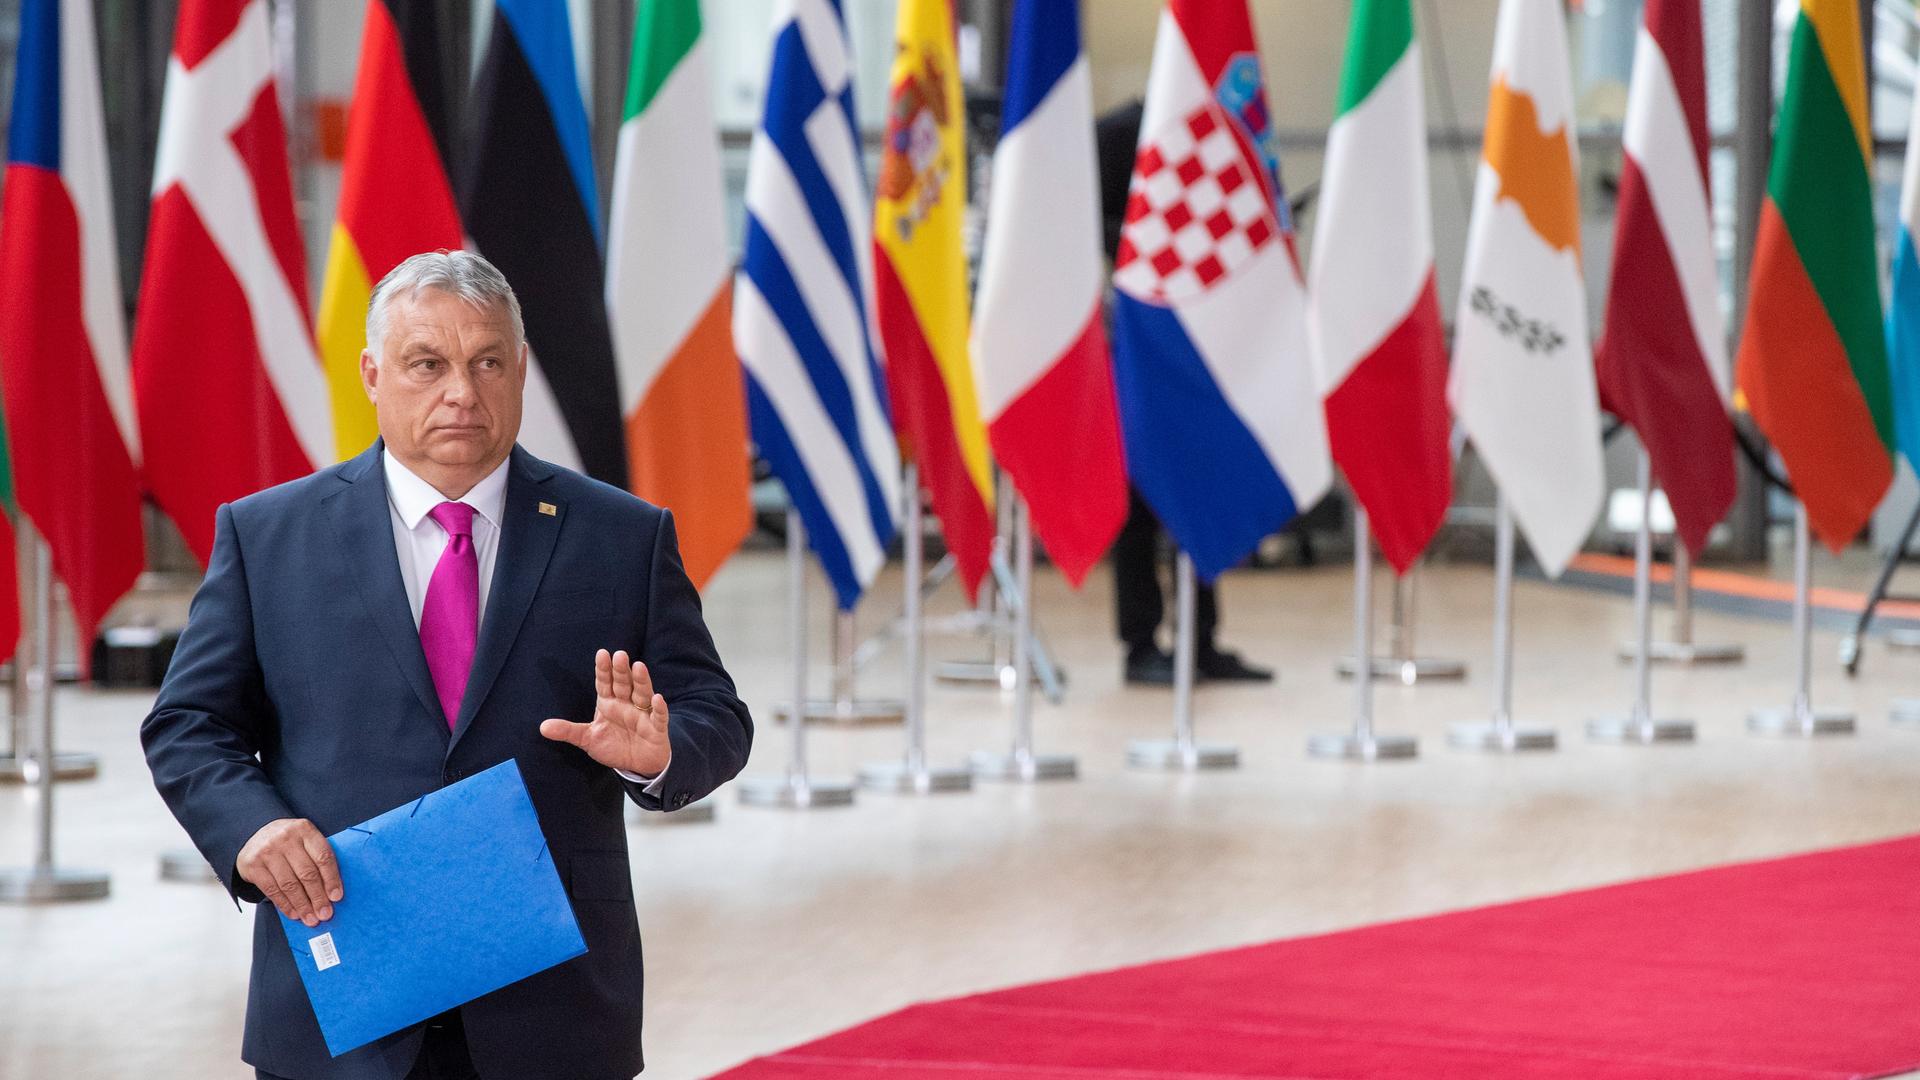 Ungarns Ministerpräsident Viktor Orbán läuft über einen roten Teppich in Brüssel und hebt die Hand